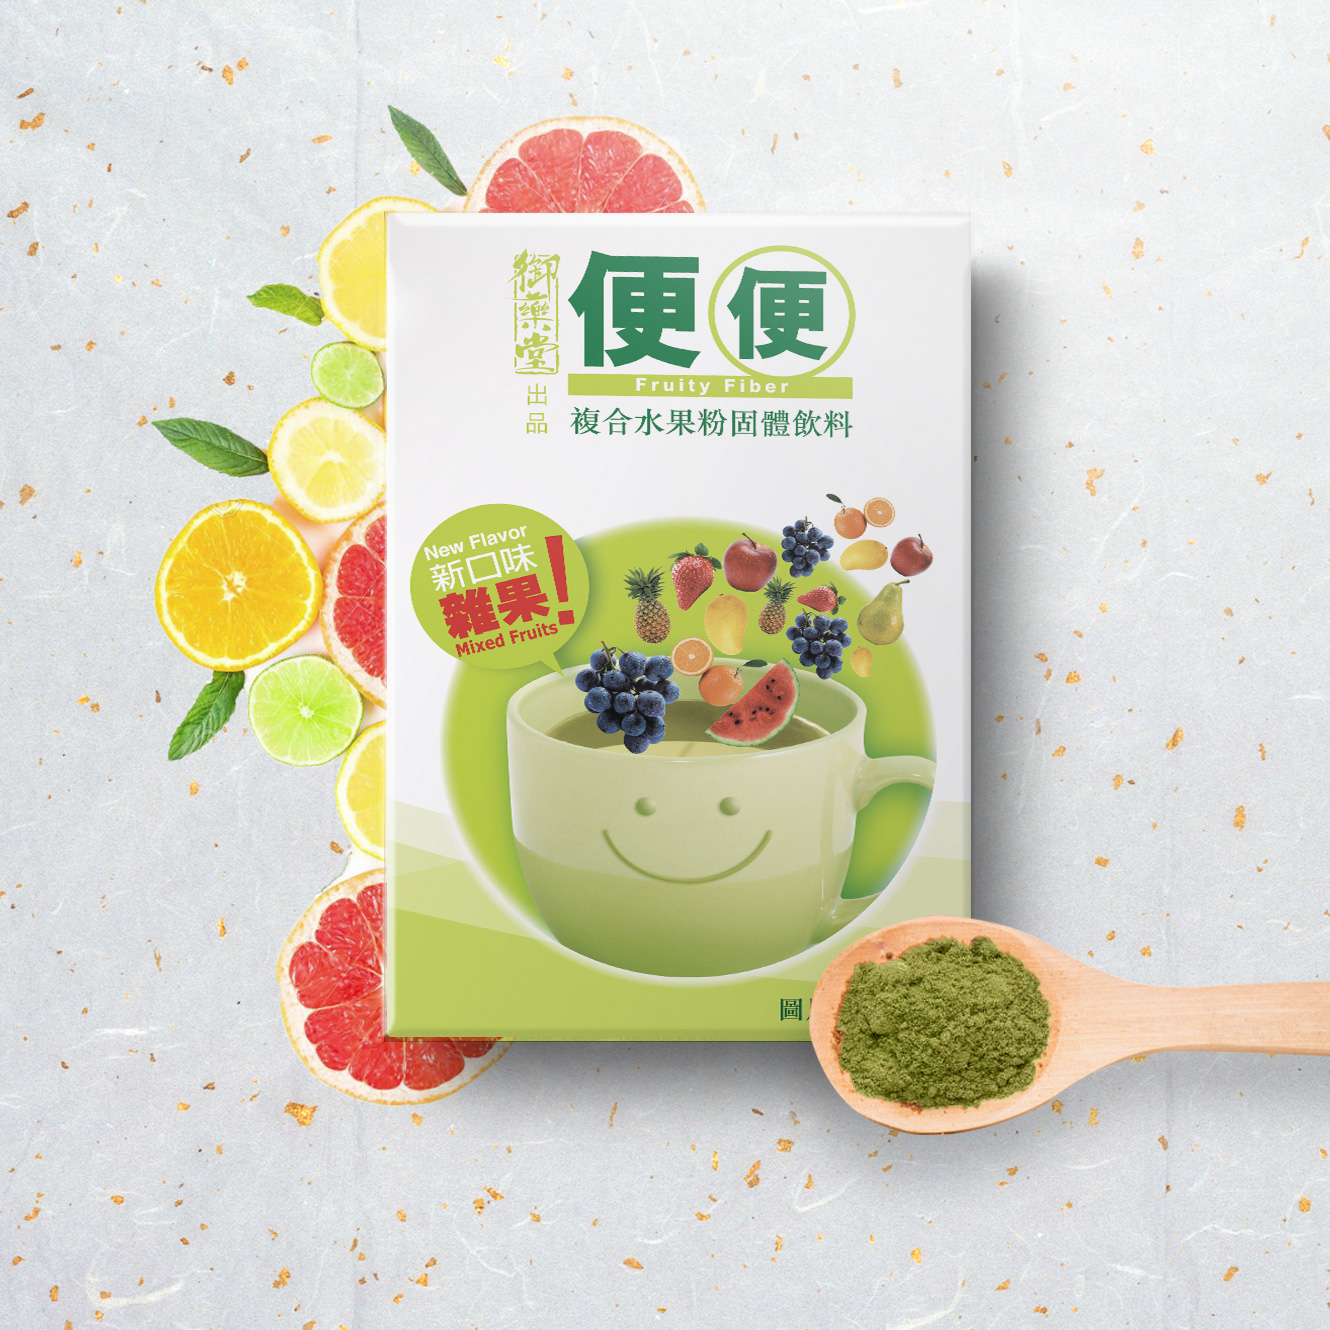 便便 - 複合水果粉固體飲料 - 中國版